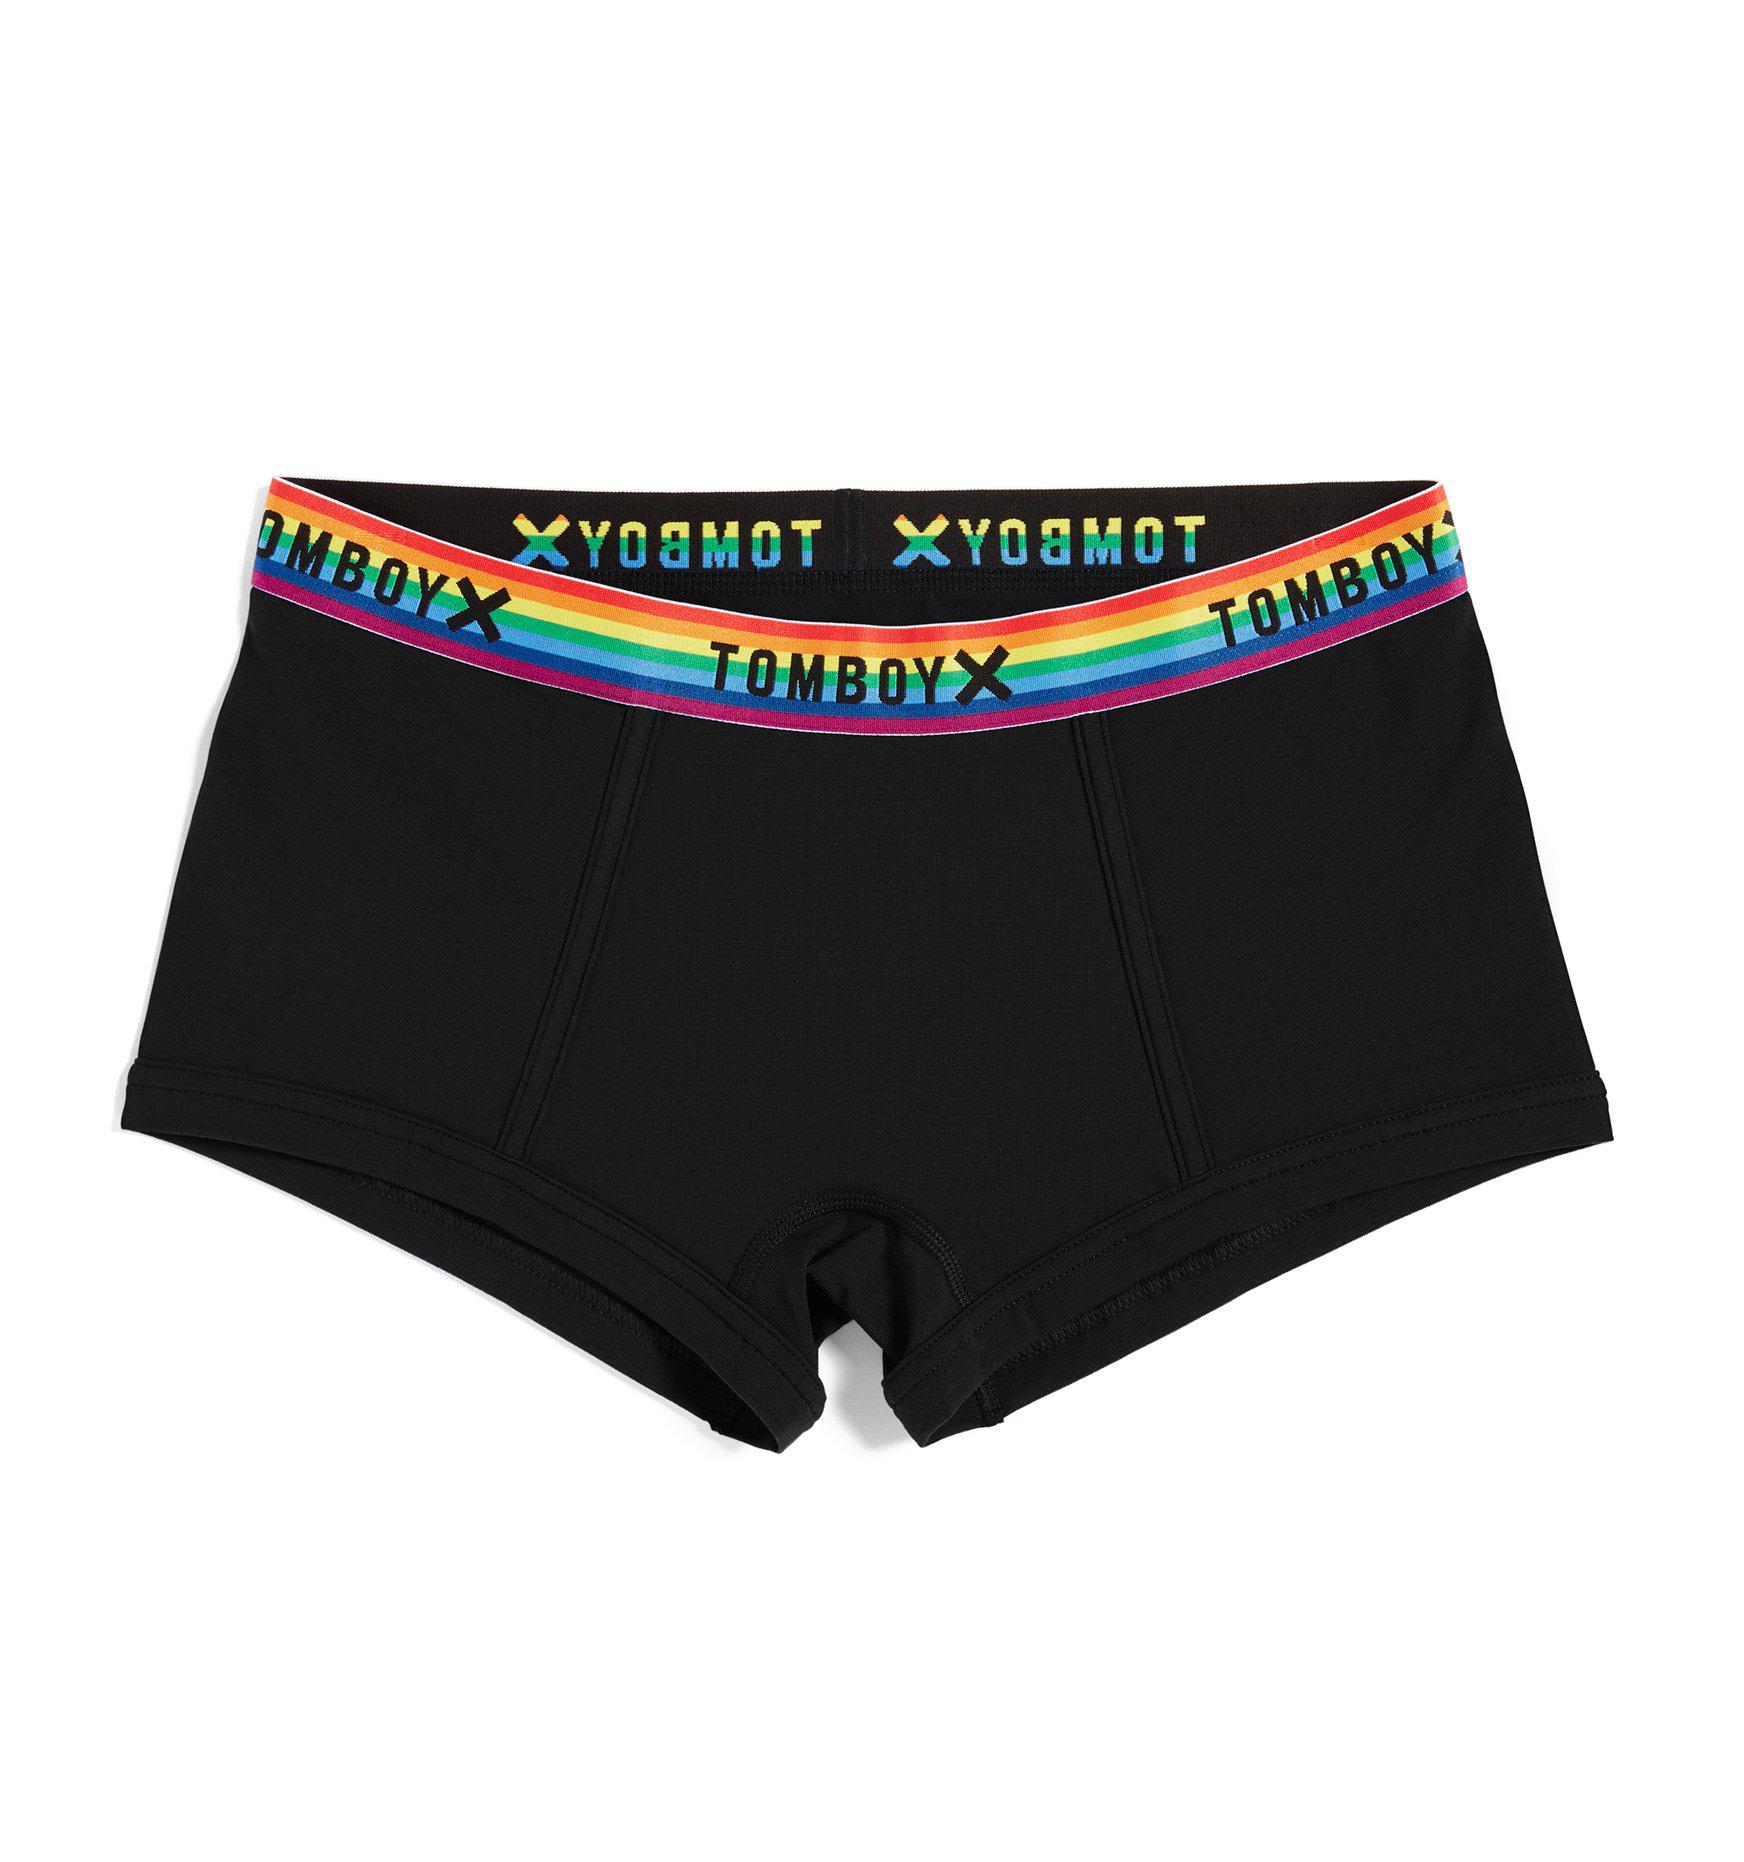 Boy Shorts - Next Gen Black Rainbow - TomboyX